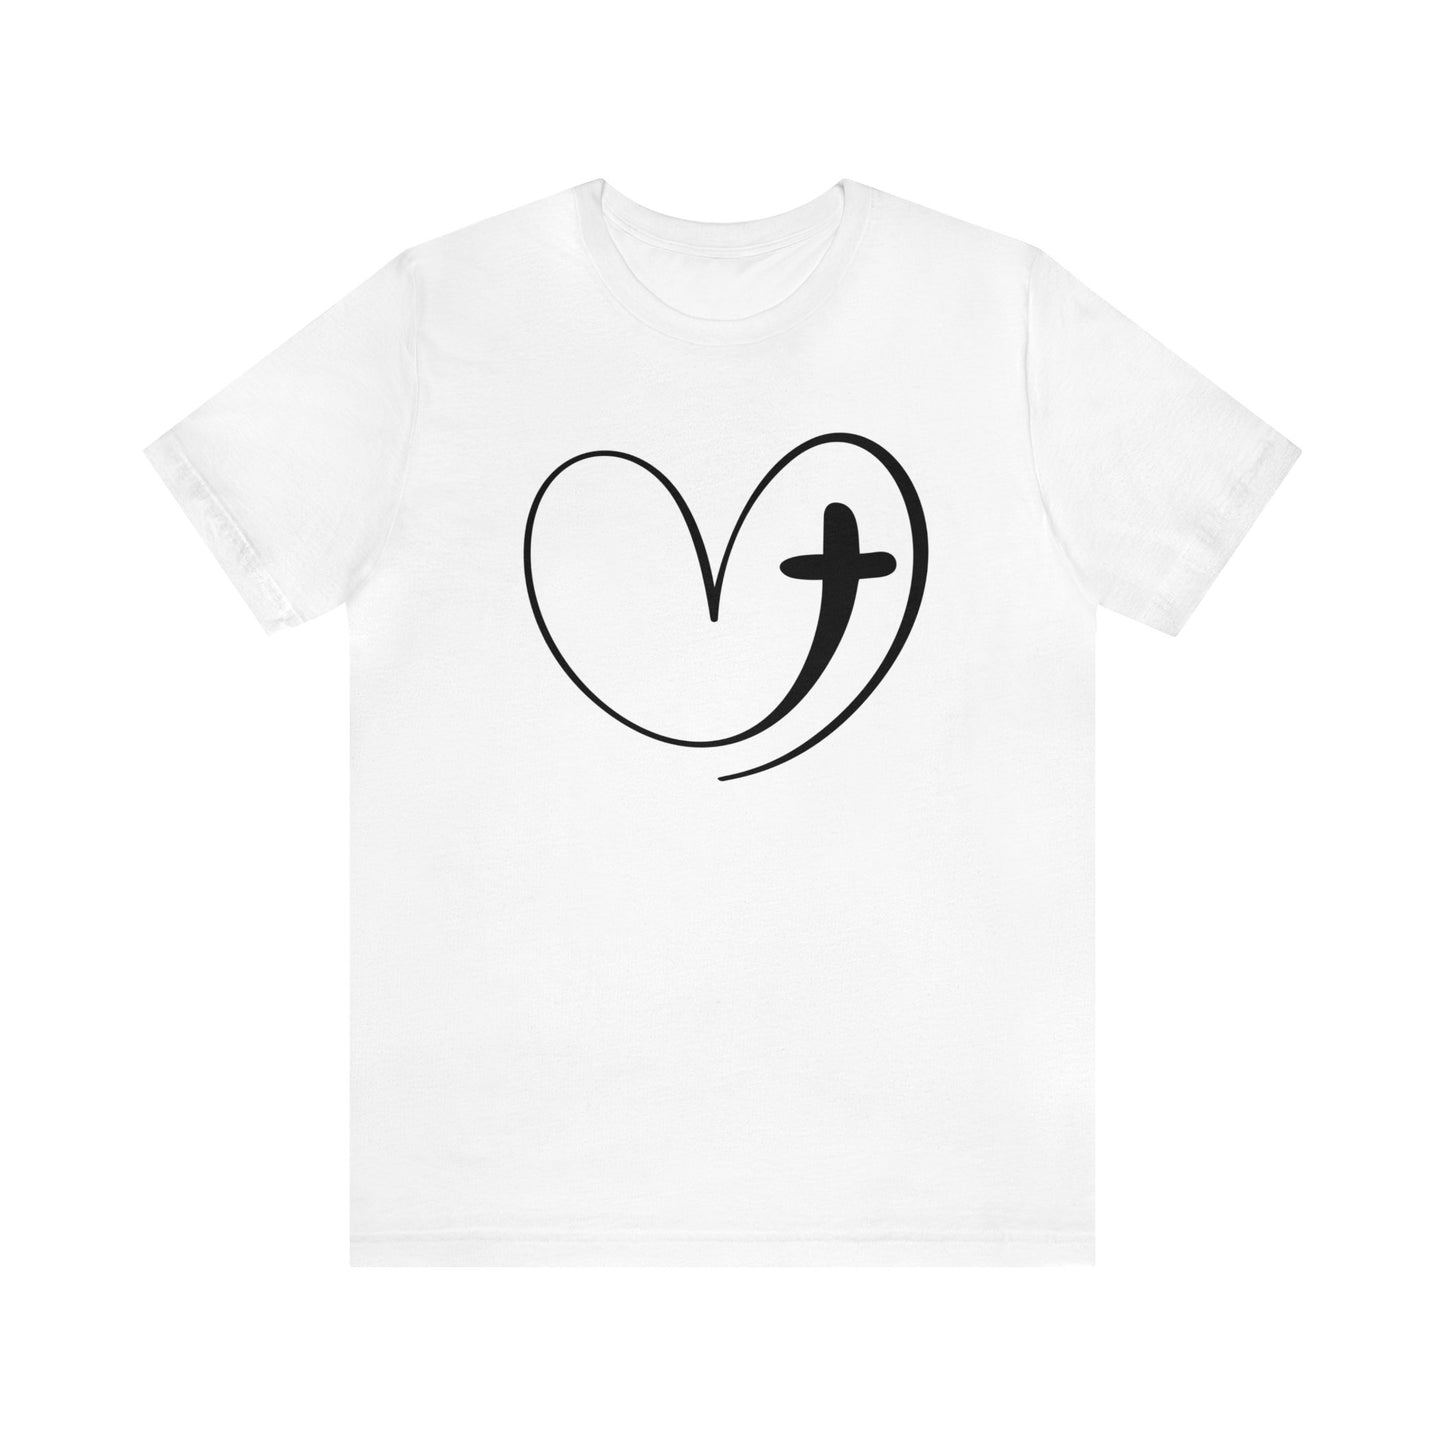 Heart T-Shirt For Easter TShirt For Christian Cross T Shirt